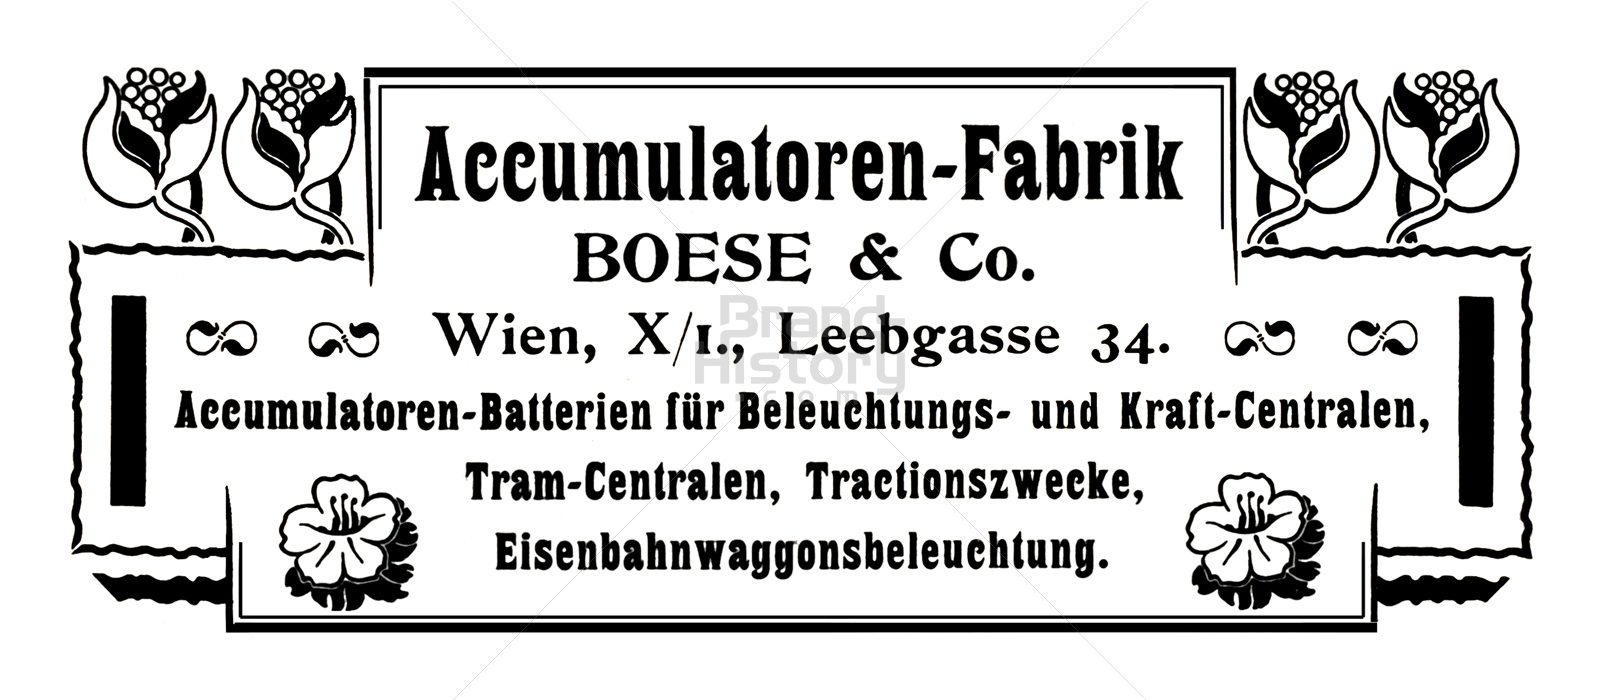 BOESE & Co., Wien